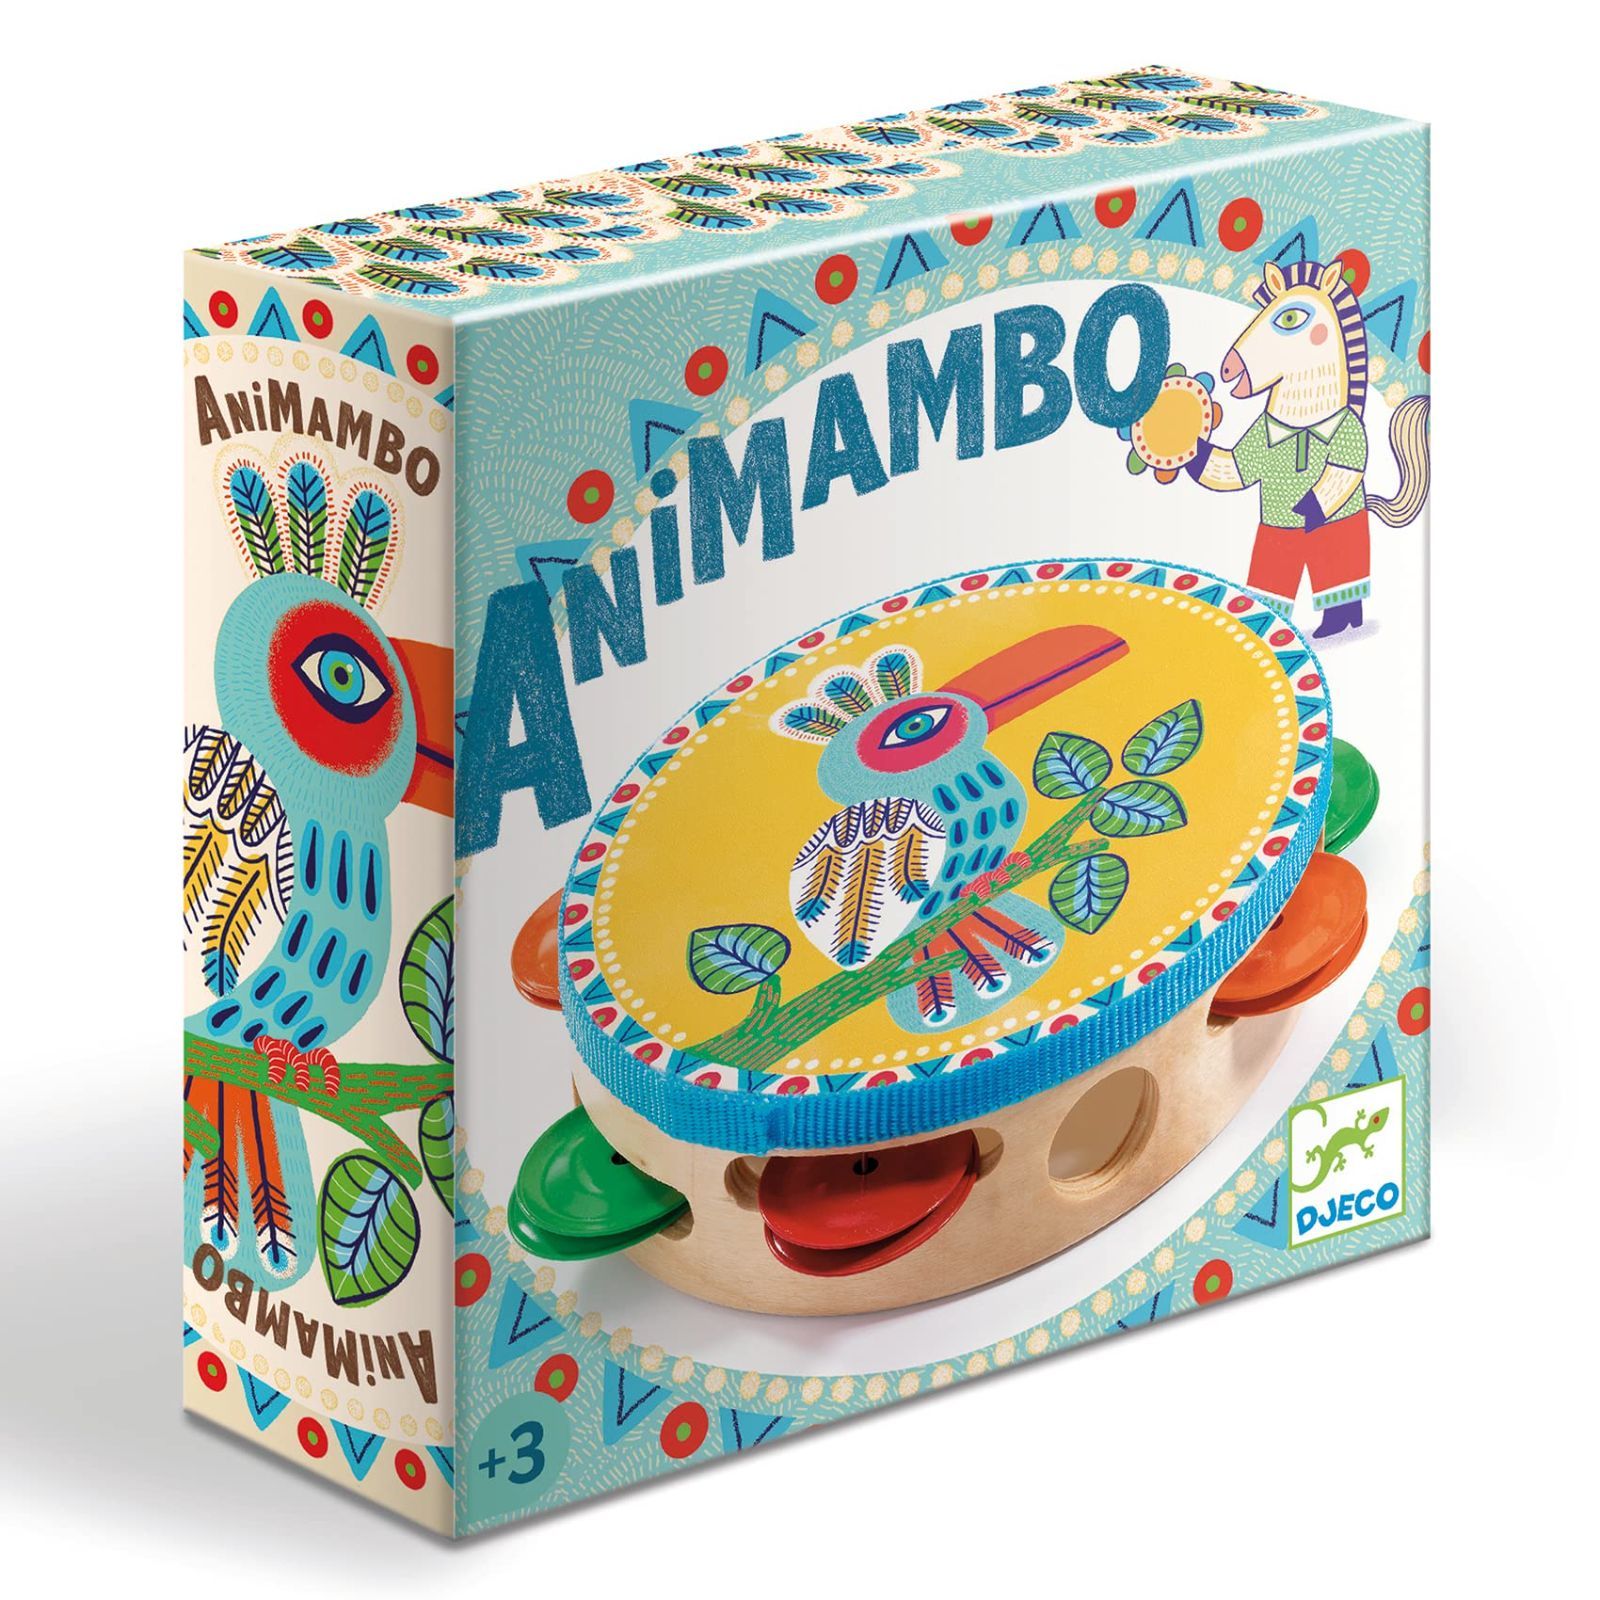 DJECO ジェコ アニマンボシリーズ タンバリン おもちゃ 楽器 木のおもちゃ 打楽器 たいこ 幼児 赤ちゃん プレゼント (DJ06005)